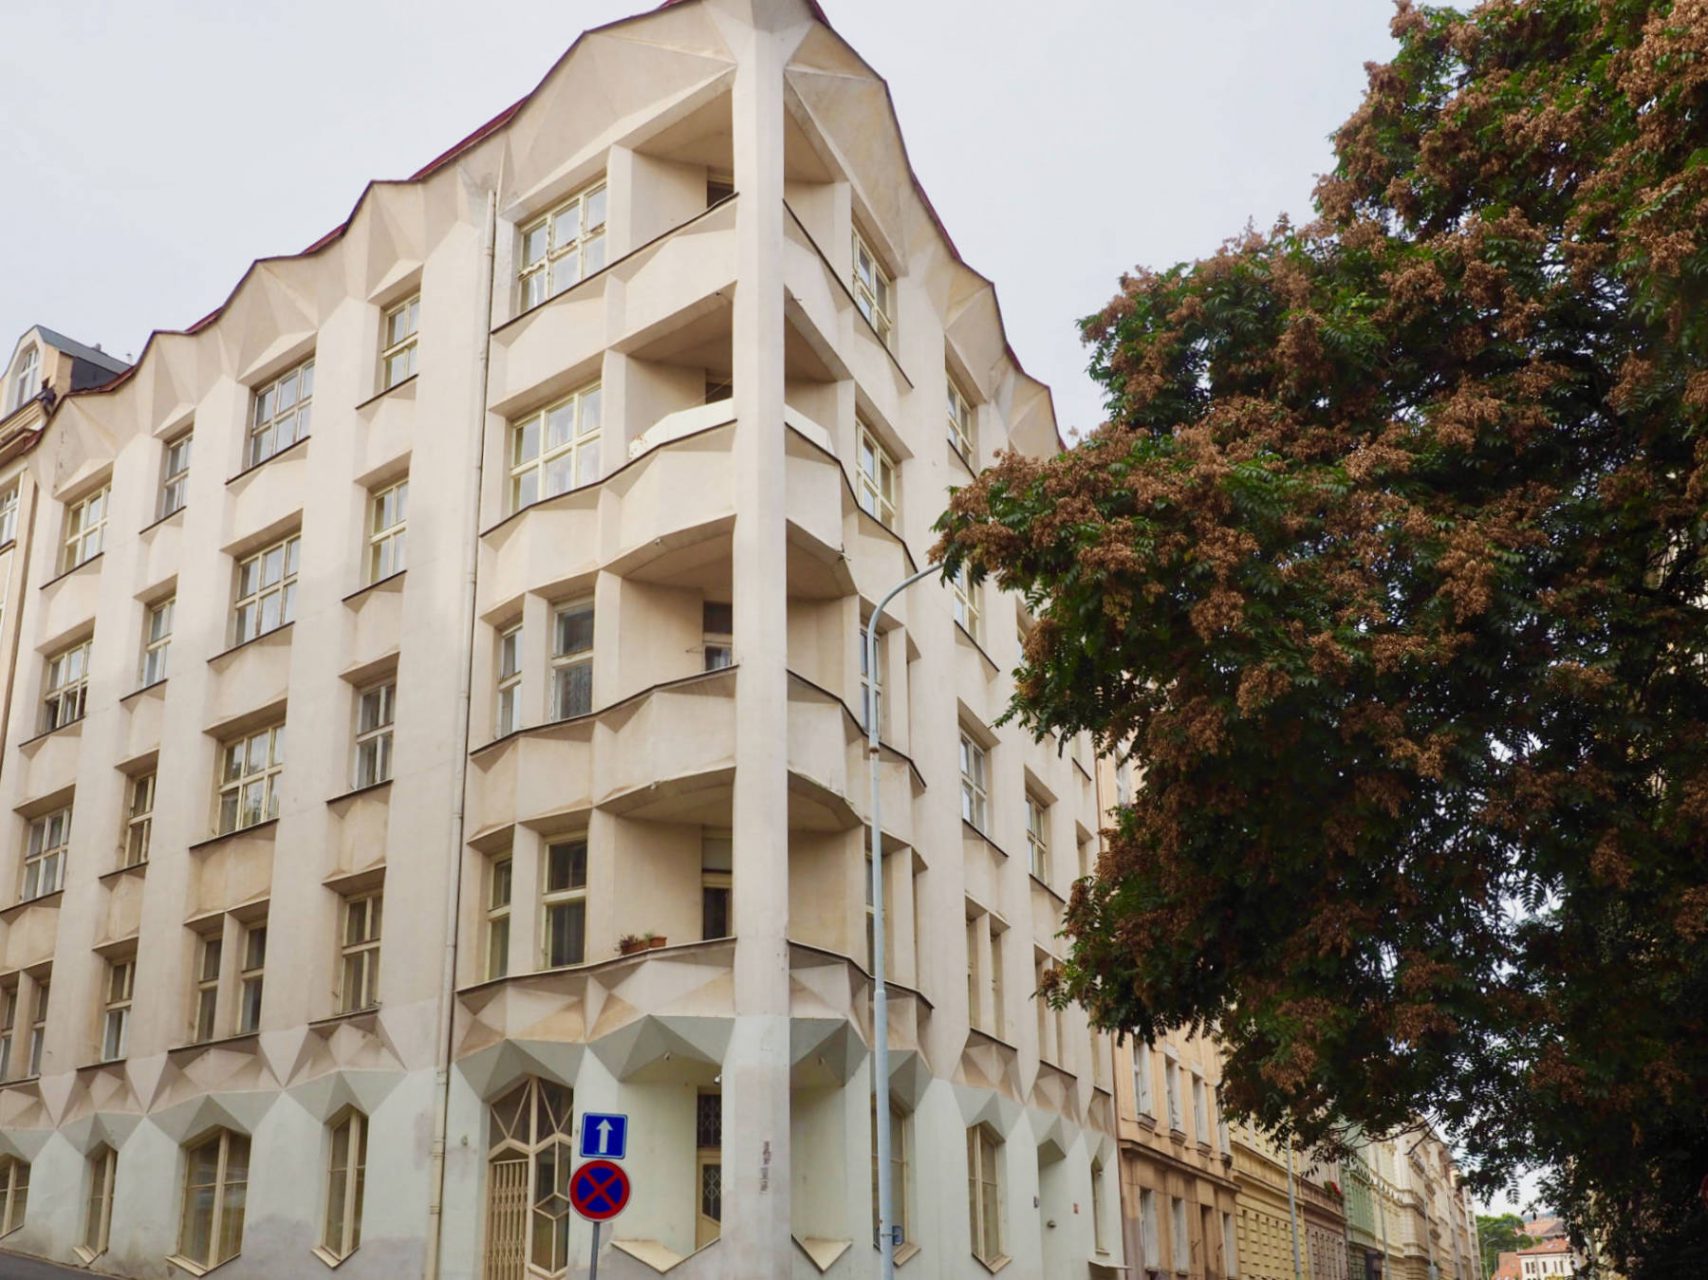 Bewegte Fassade.. Nahe der Villa Kovařovic, in der Neklanova Straße, hat Josef Chochol ein Jahr später ein fünfgeschossiges Wohnhaus mit einer bewegten Fassade aus
wabenähnlichen Vorsprüngen und kristallisch gebrochenen Kuben errichtet.